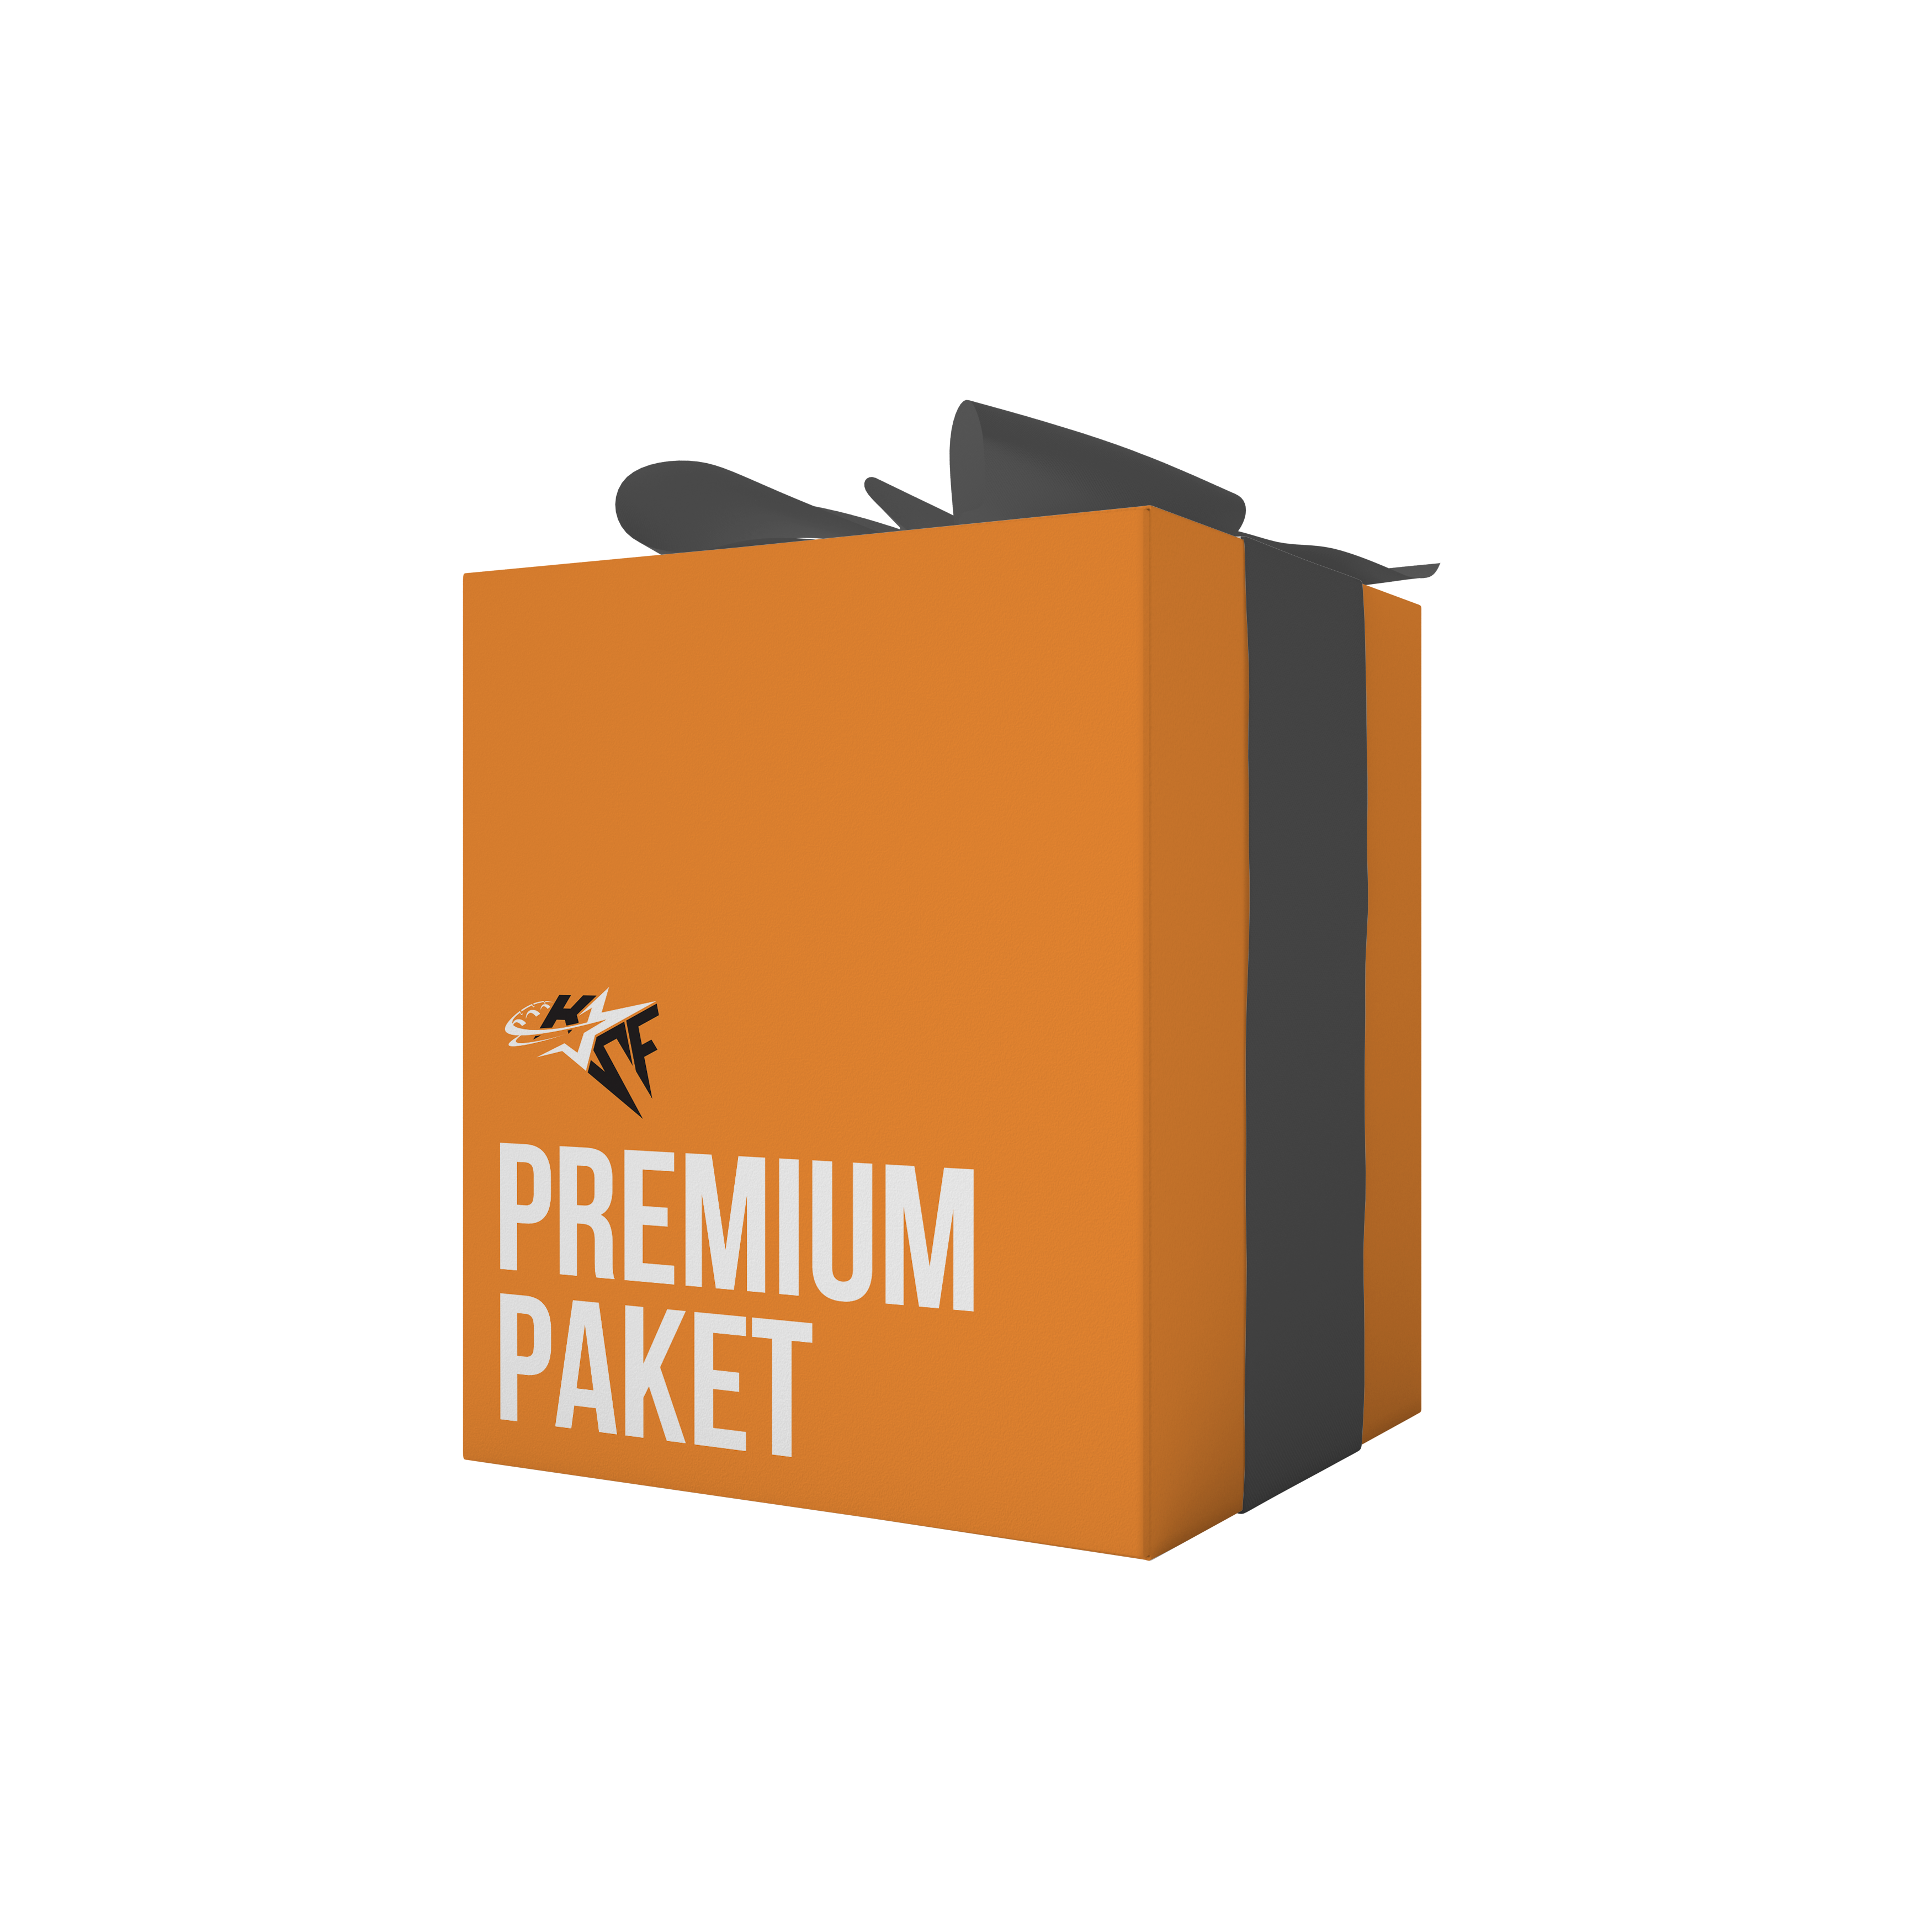 Premium paket